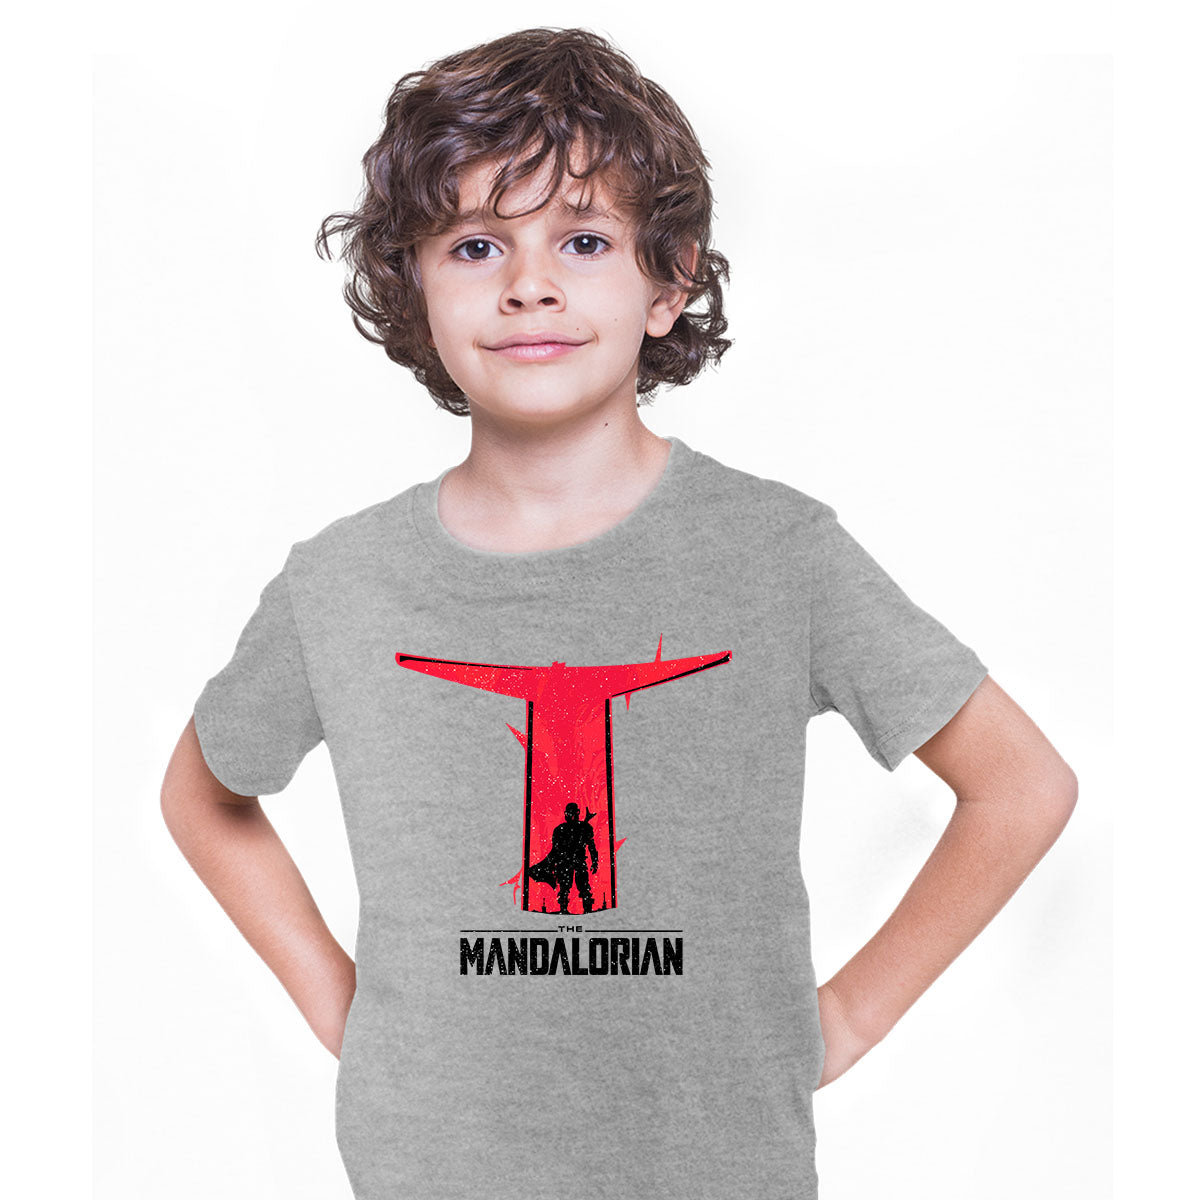 This Is The Way T-Shirt Mandalorian Star Wars Helmet Birthday Gift T-shirt for Kids - Kuzi Tees